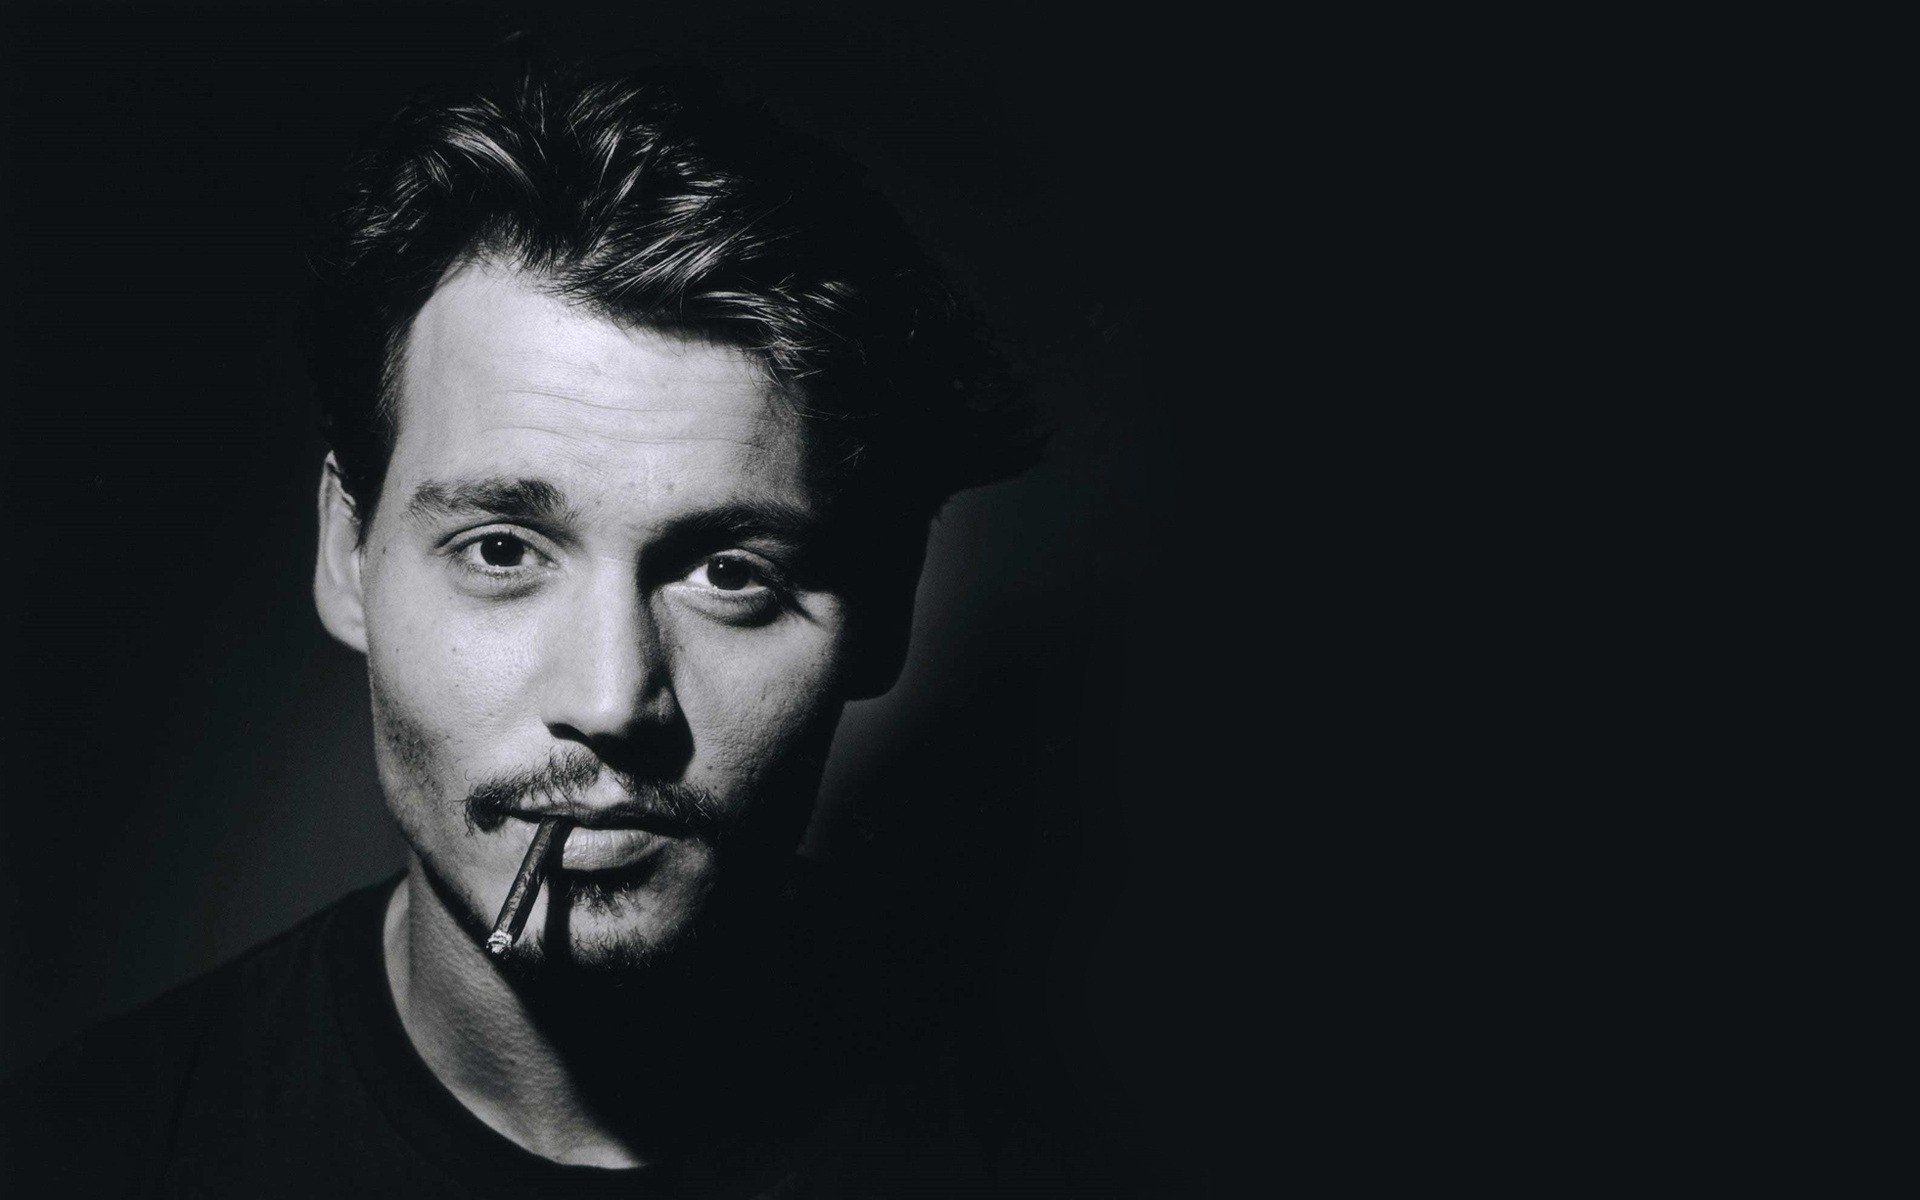 Men Johnny Depp actors wallpaper 1920x1200 258401 WallpaperUP